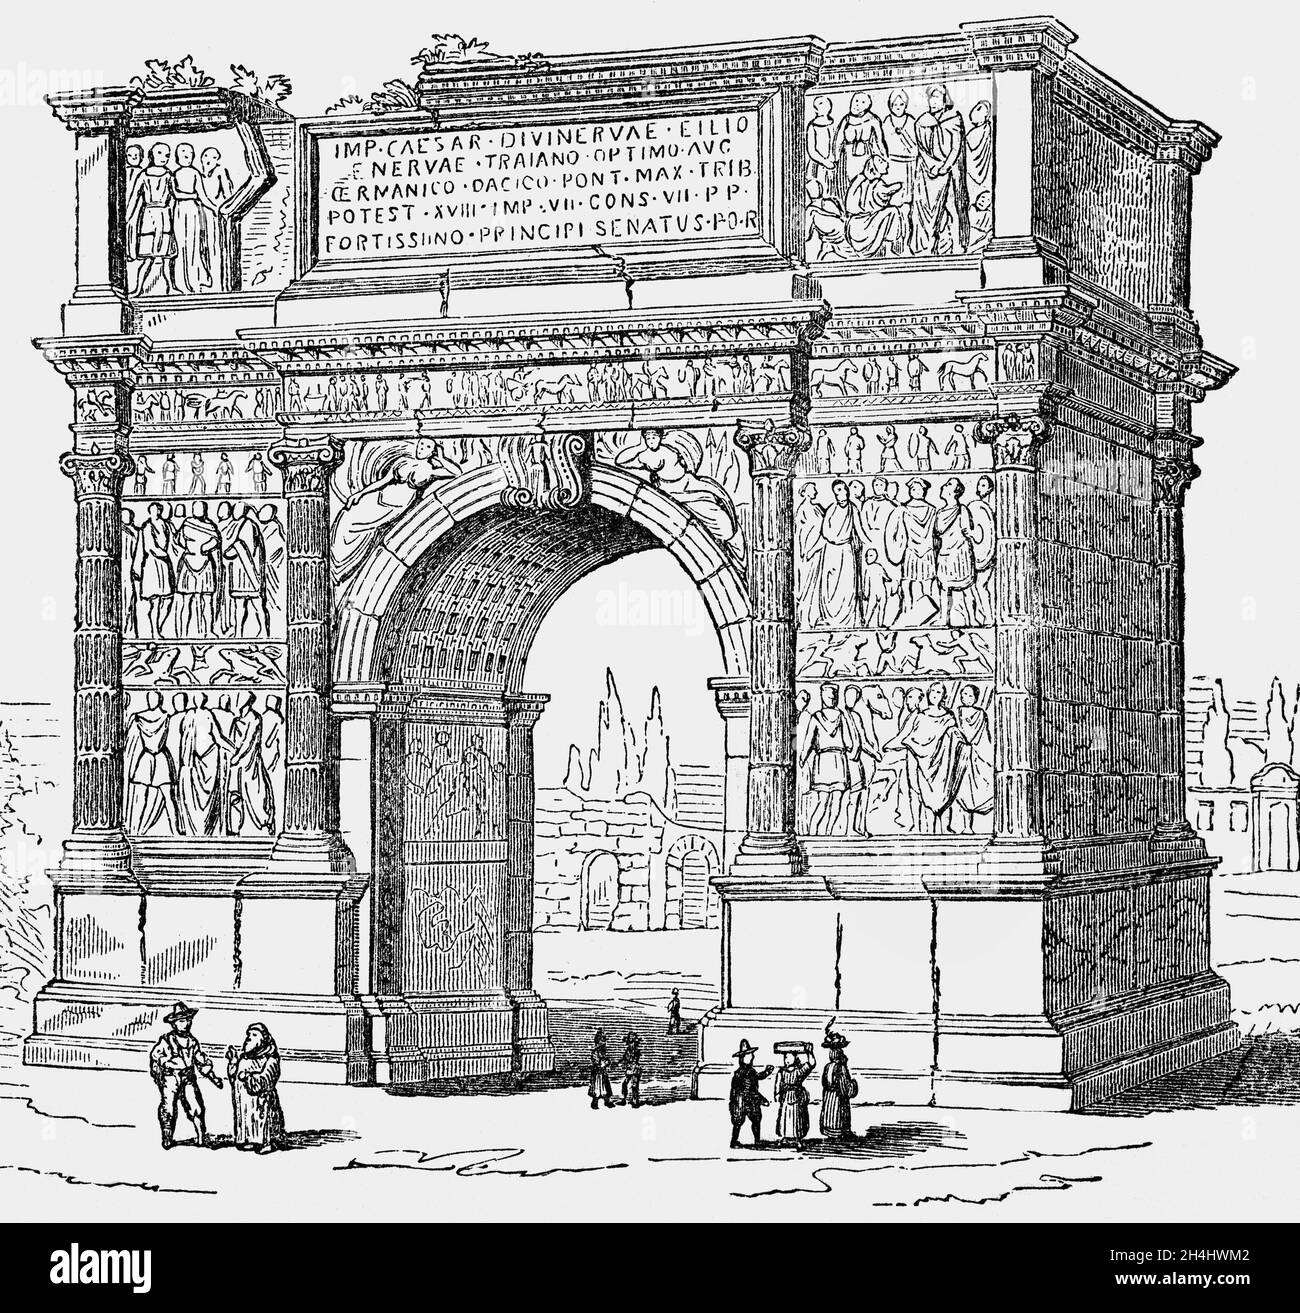 Eine Illustration des Trajansbogens aus dem späten 19. Jahrhundert, einem antiken römischen Triumphbogen in Benevento, Süditalien. Sie wurde zwischen 114 und 117 zu Ehren des Kaiser Trajan über die Via Appia an der Stelle errichtet, an der sie die Stadt erreicht. Stockfoto